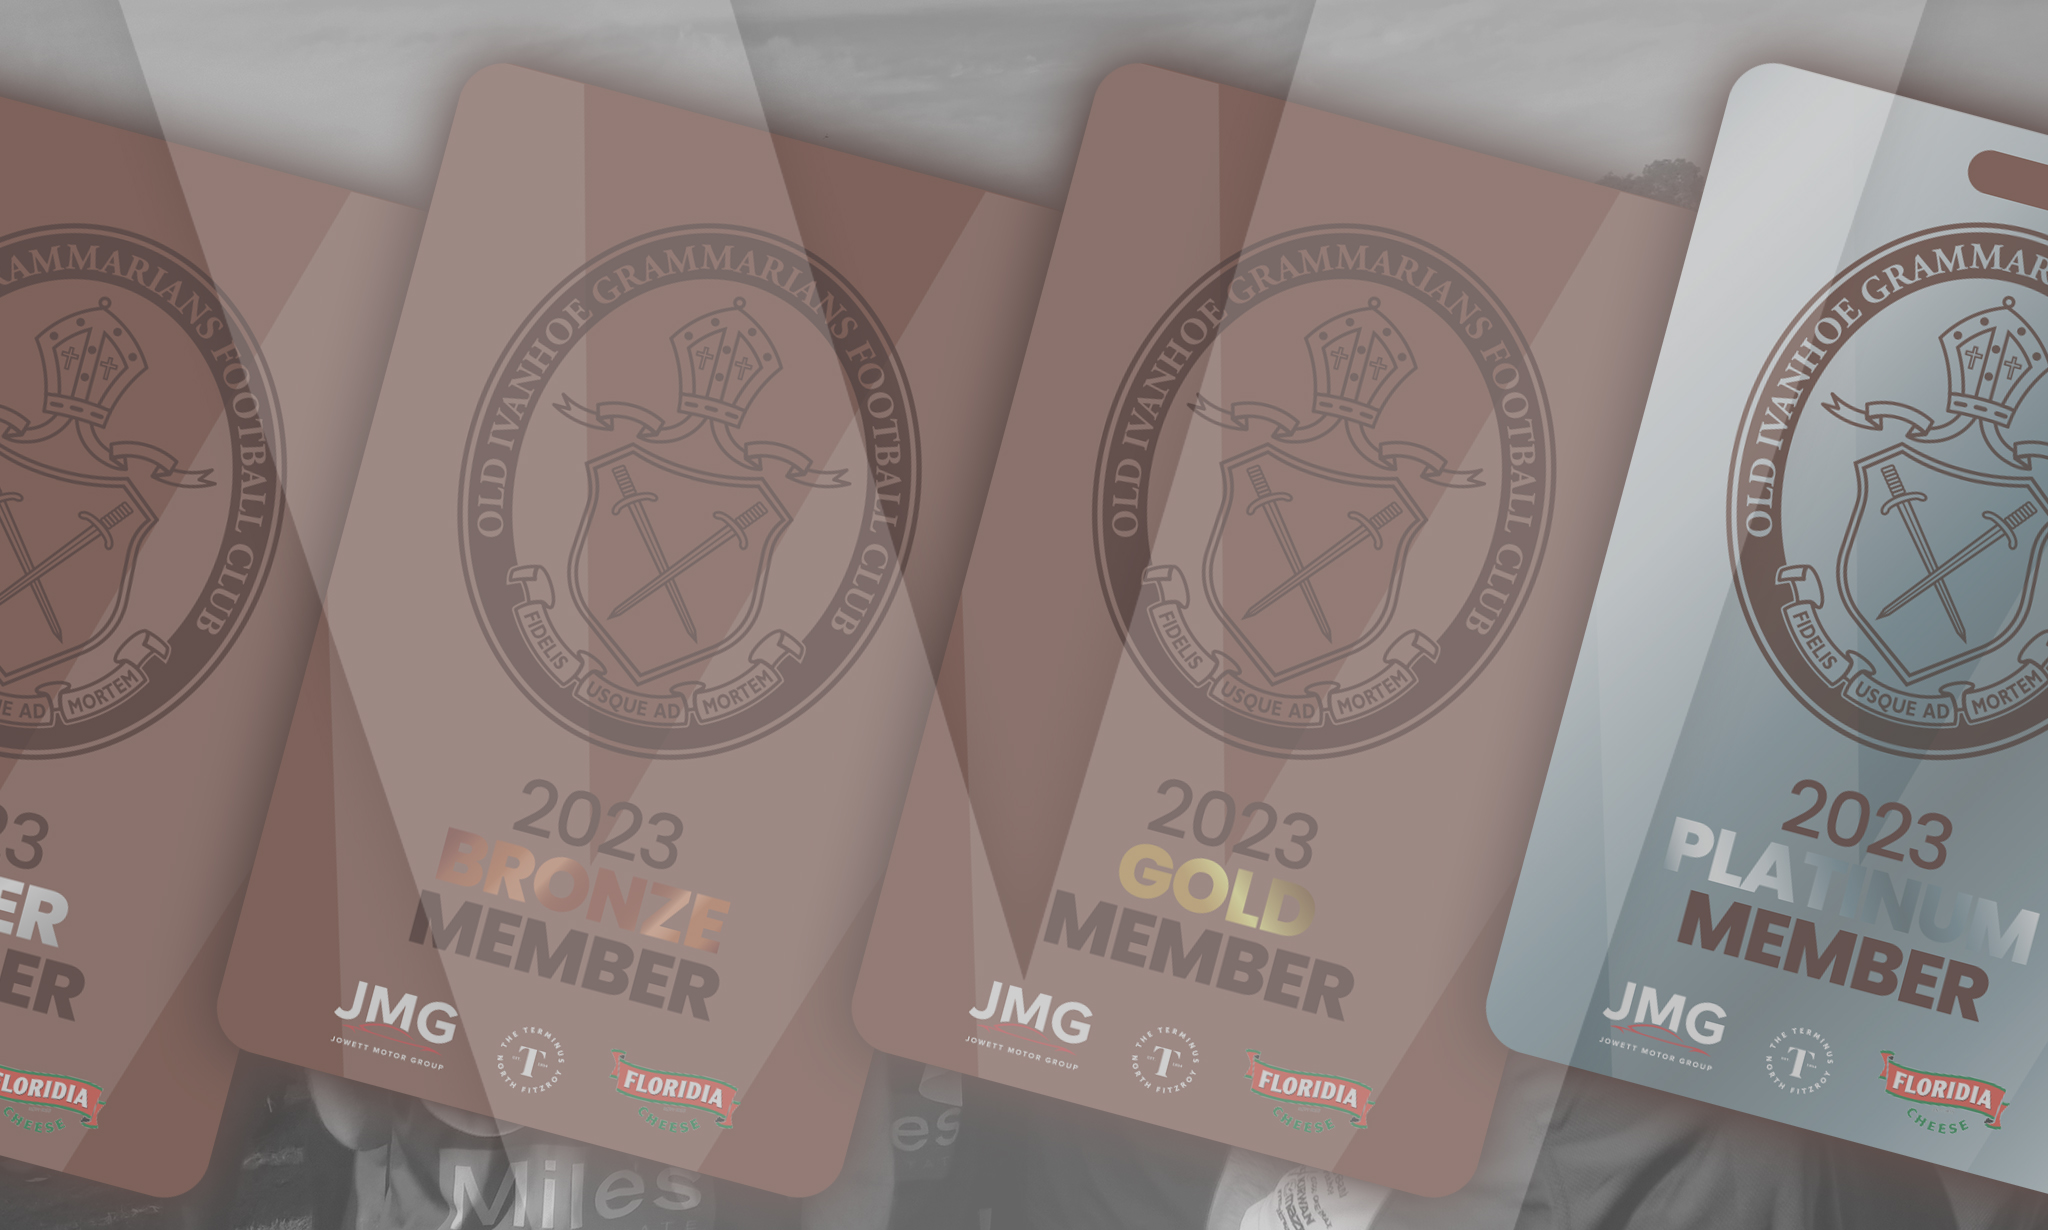 OIGFC Membership Packages